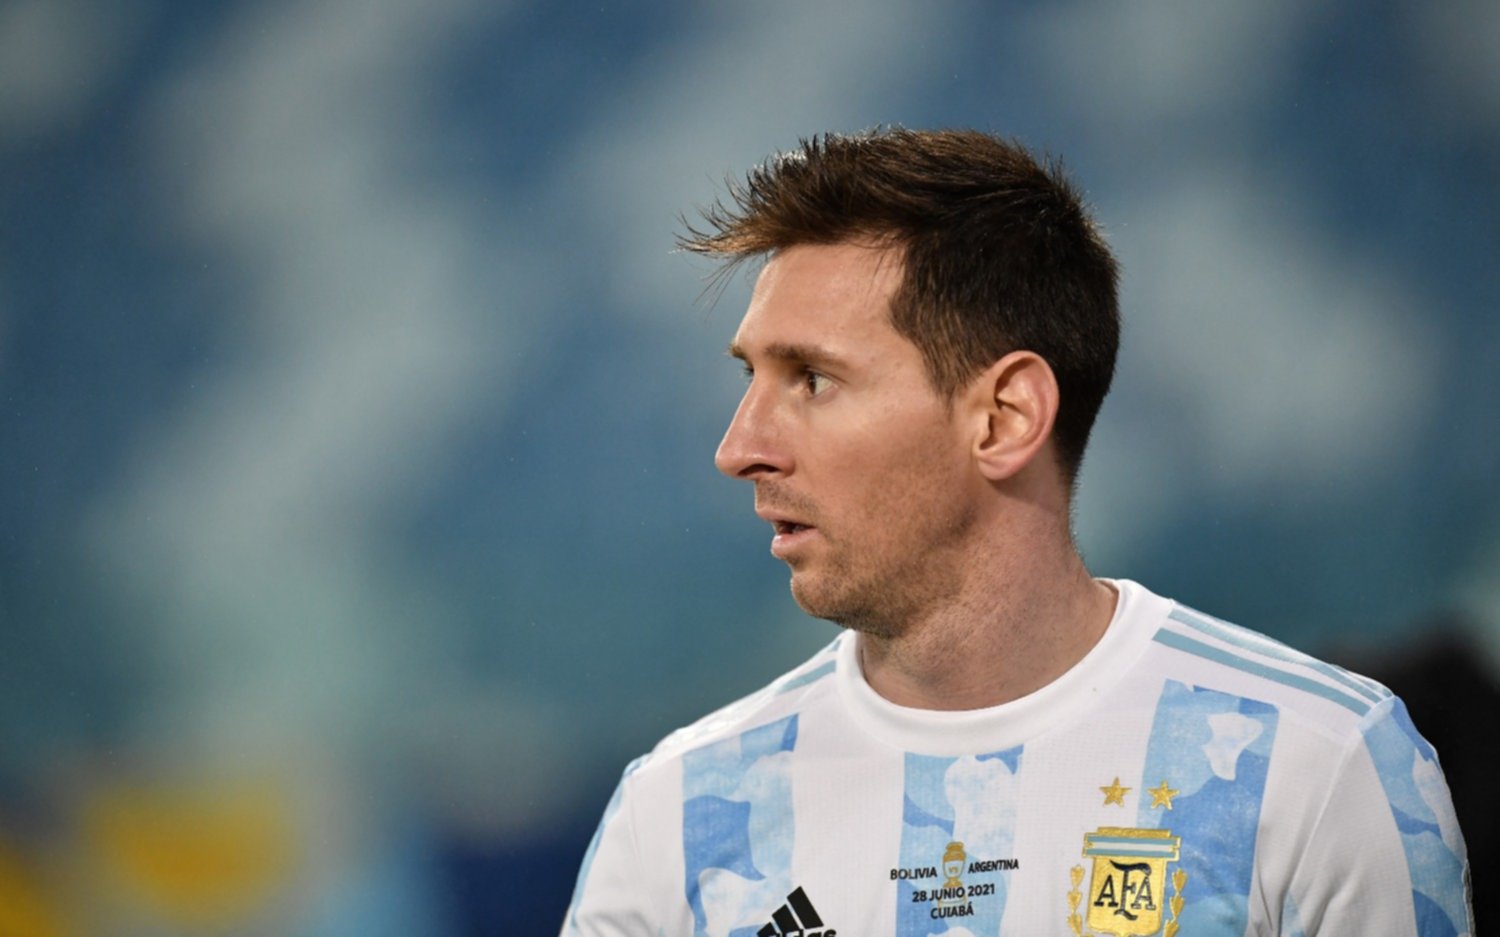 Nuevo apodo: por qué en las redes le dicen "Ankara" a Messi